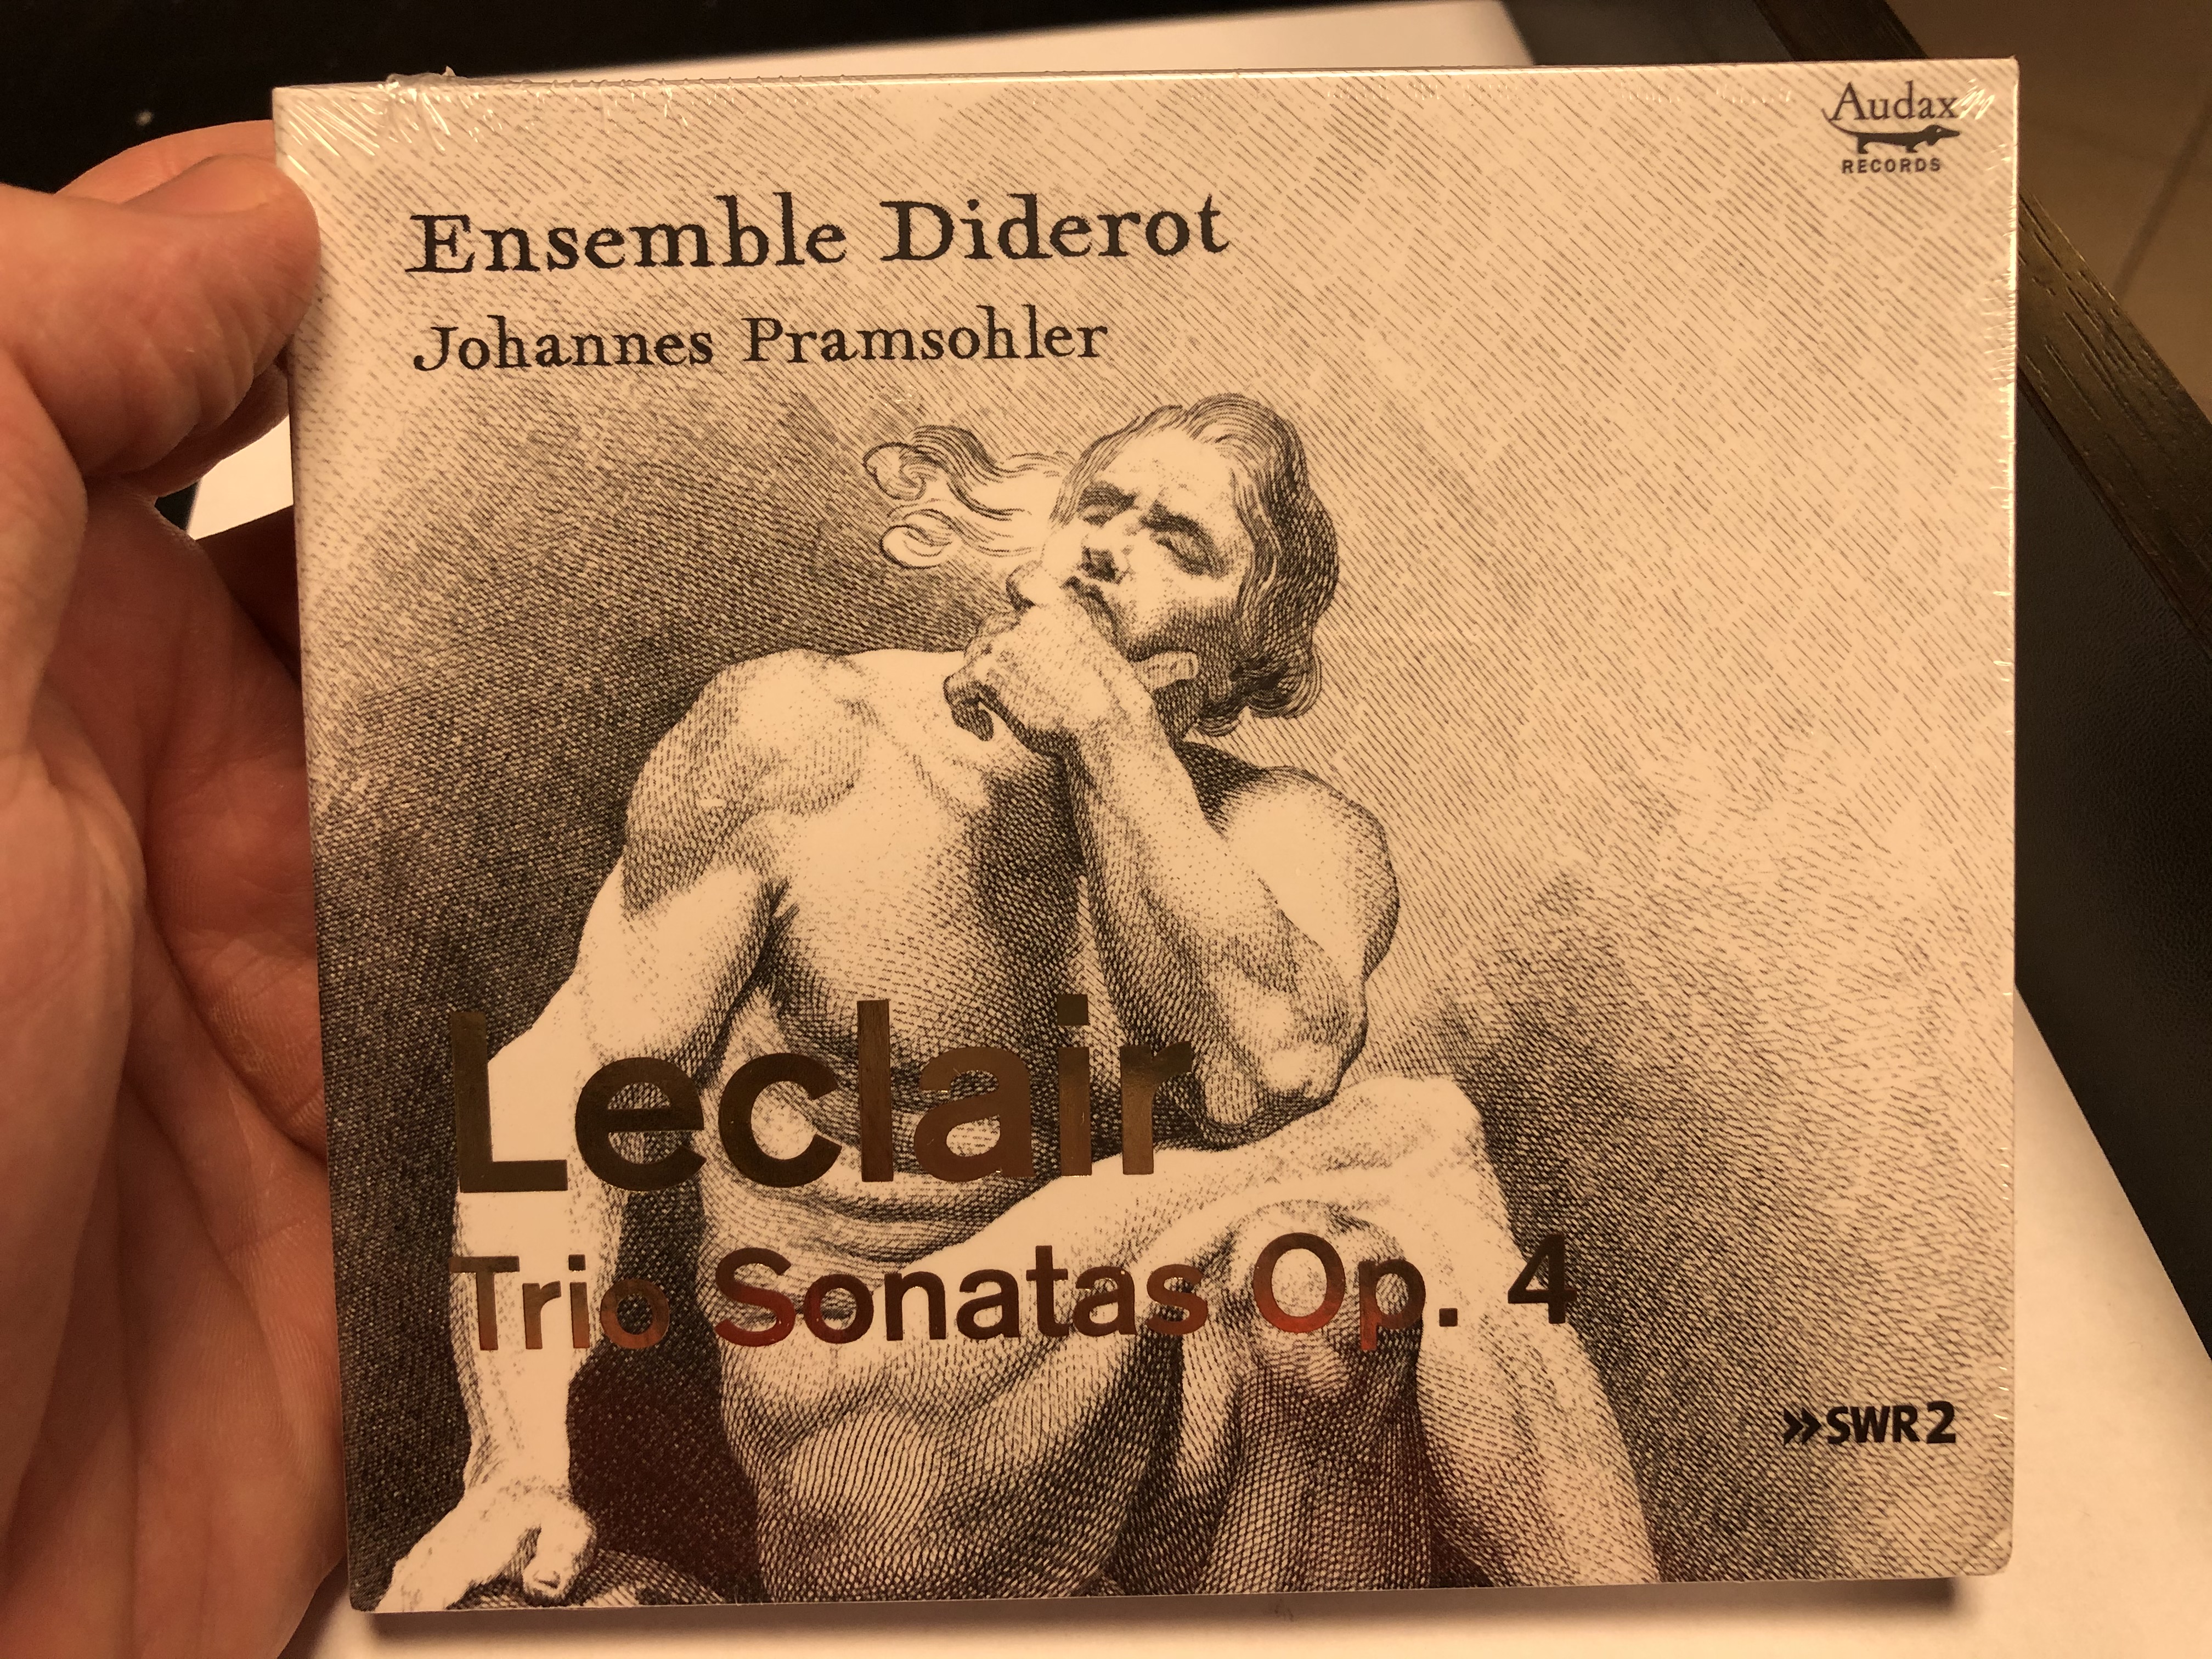 ensemble-diderot-johannes-pramsohler-leclair-trio-sonatas-op.-4-audax-records-audio-cd-2020-adx13724-1-.jpg